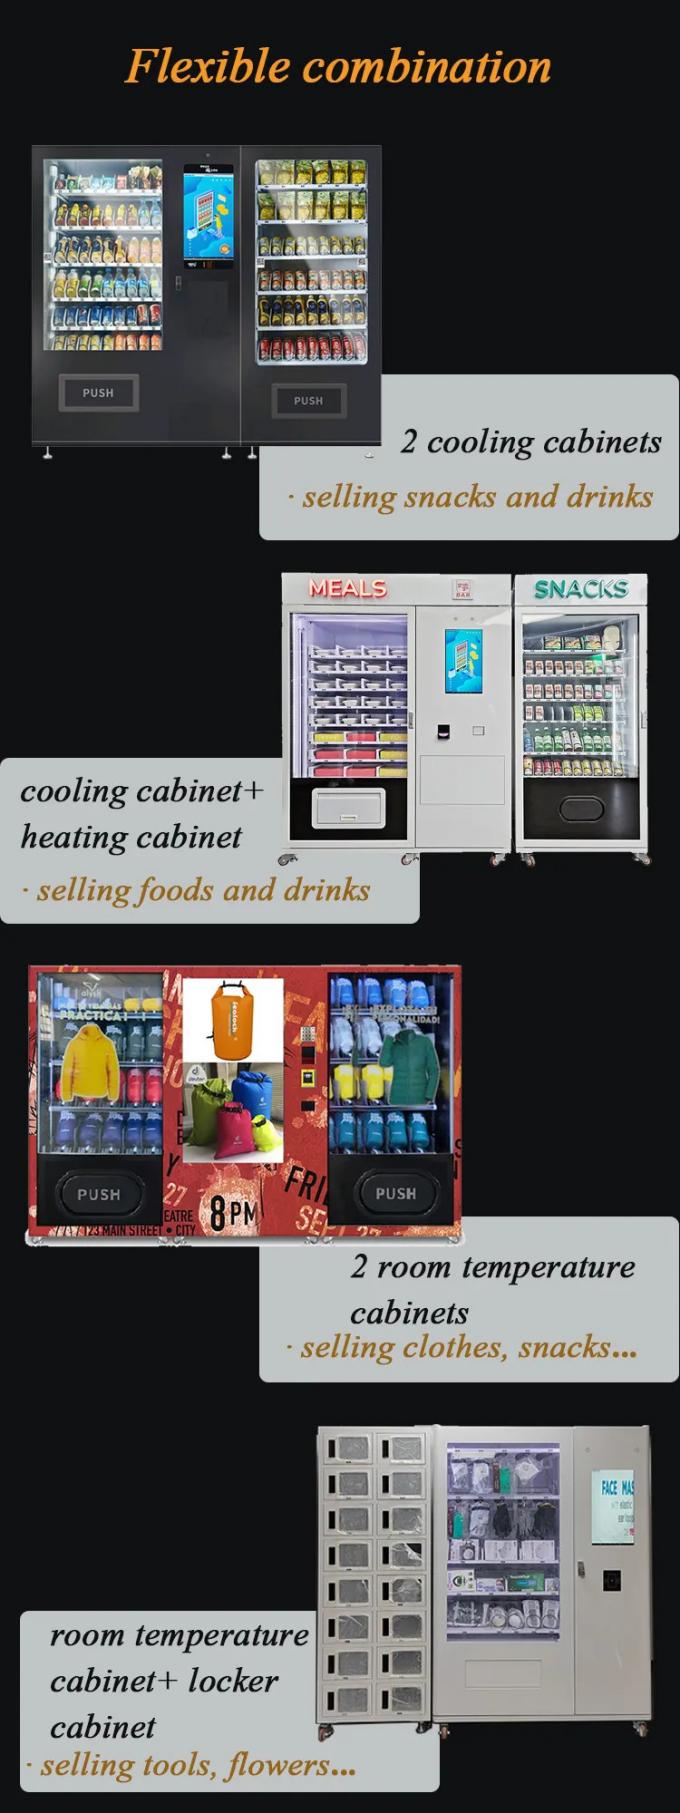 A máquina de venda automática combinado do petisco da refeição apoia a combinação flexível